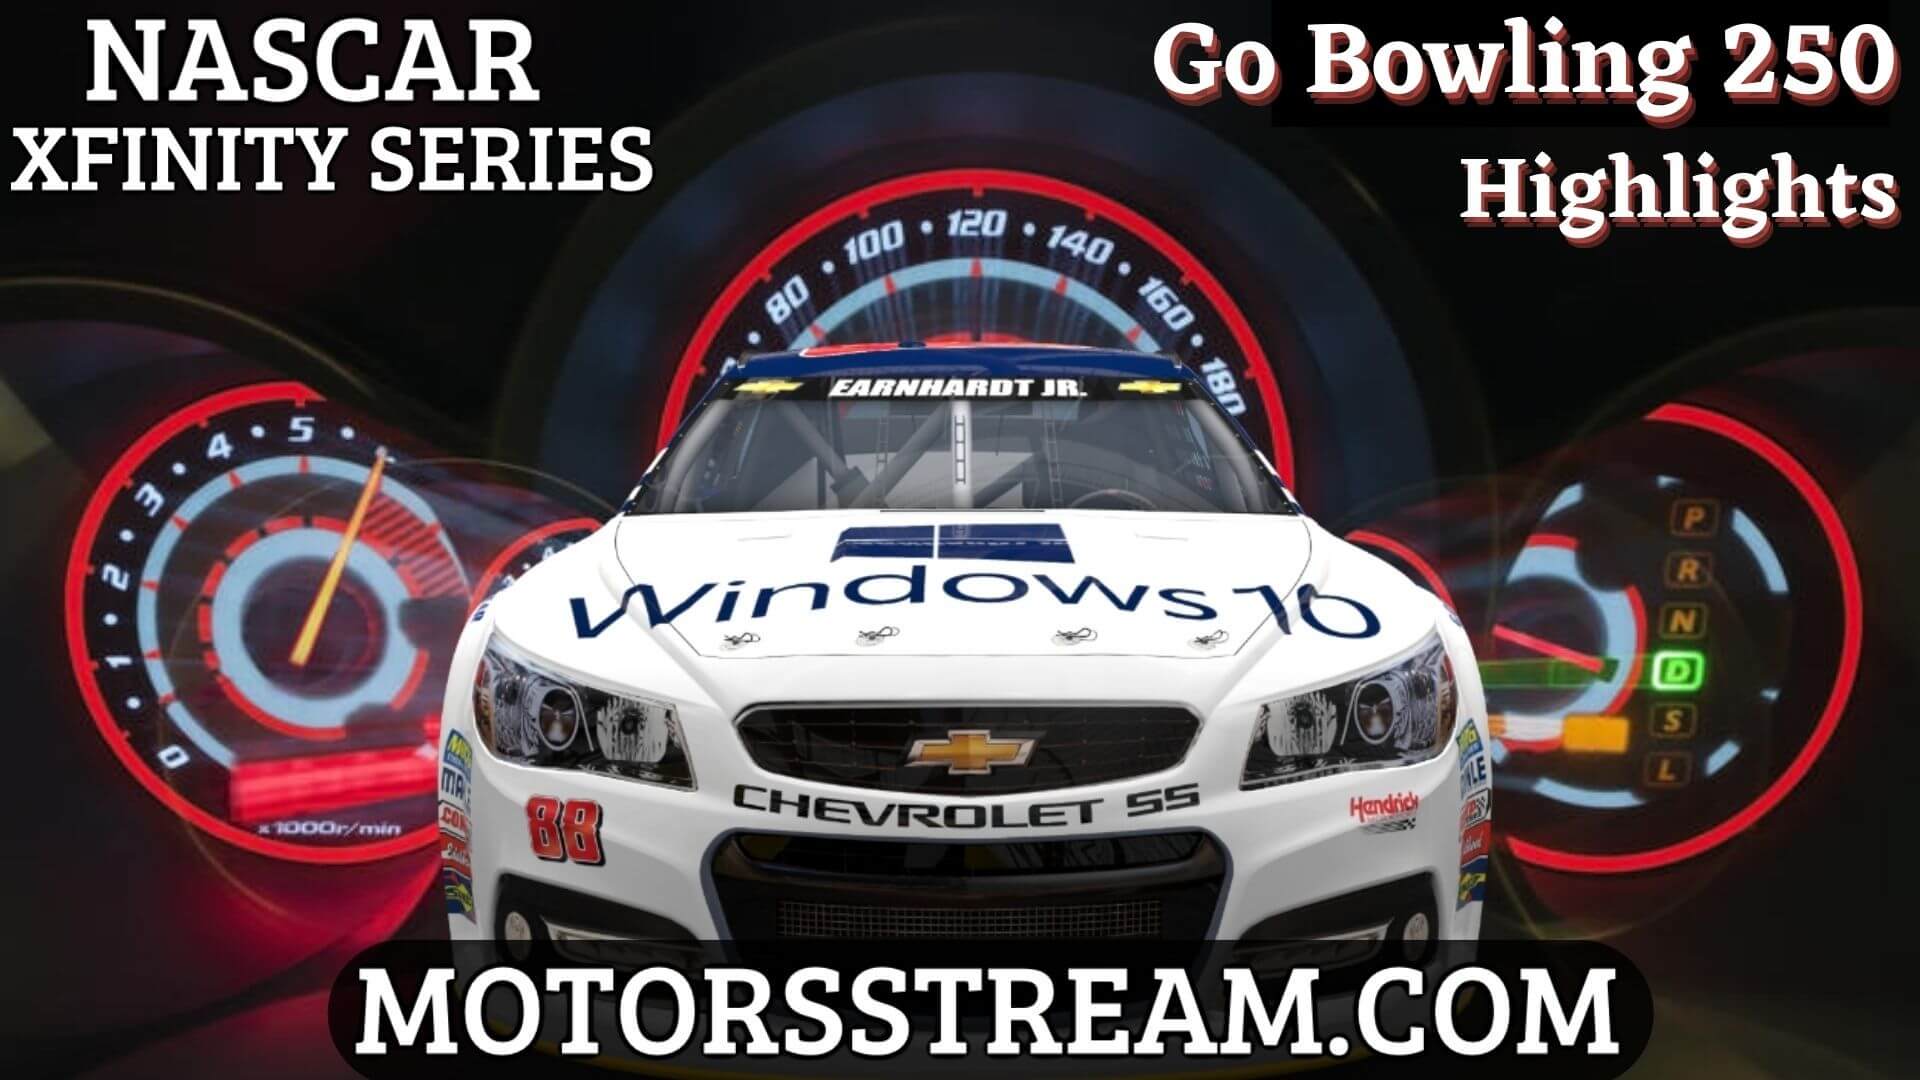 NASCAR Go Bowling 250 Highlights 2021 Xfinity Series